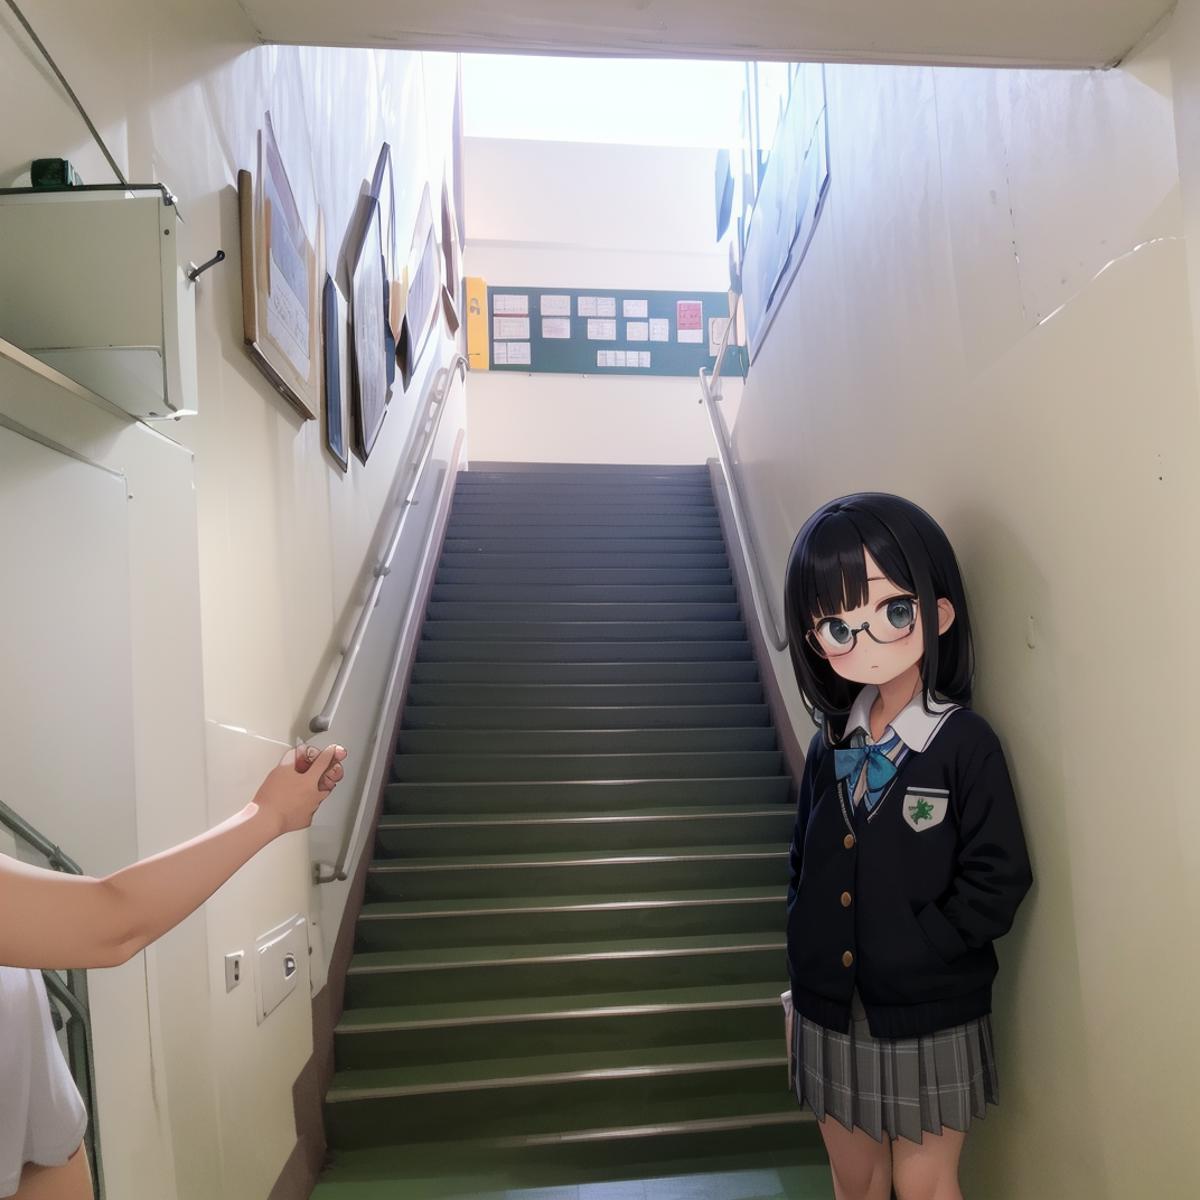 学校の階段 / Kaidan SD15 image by swingwings